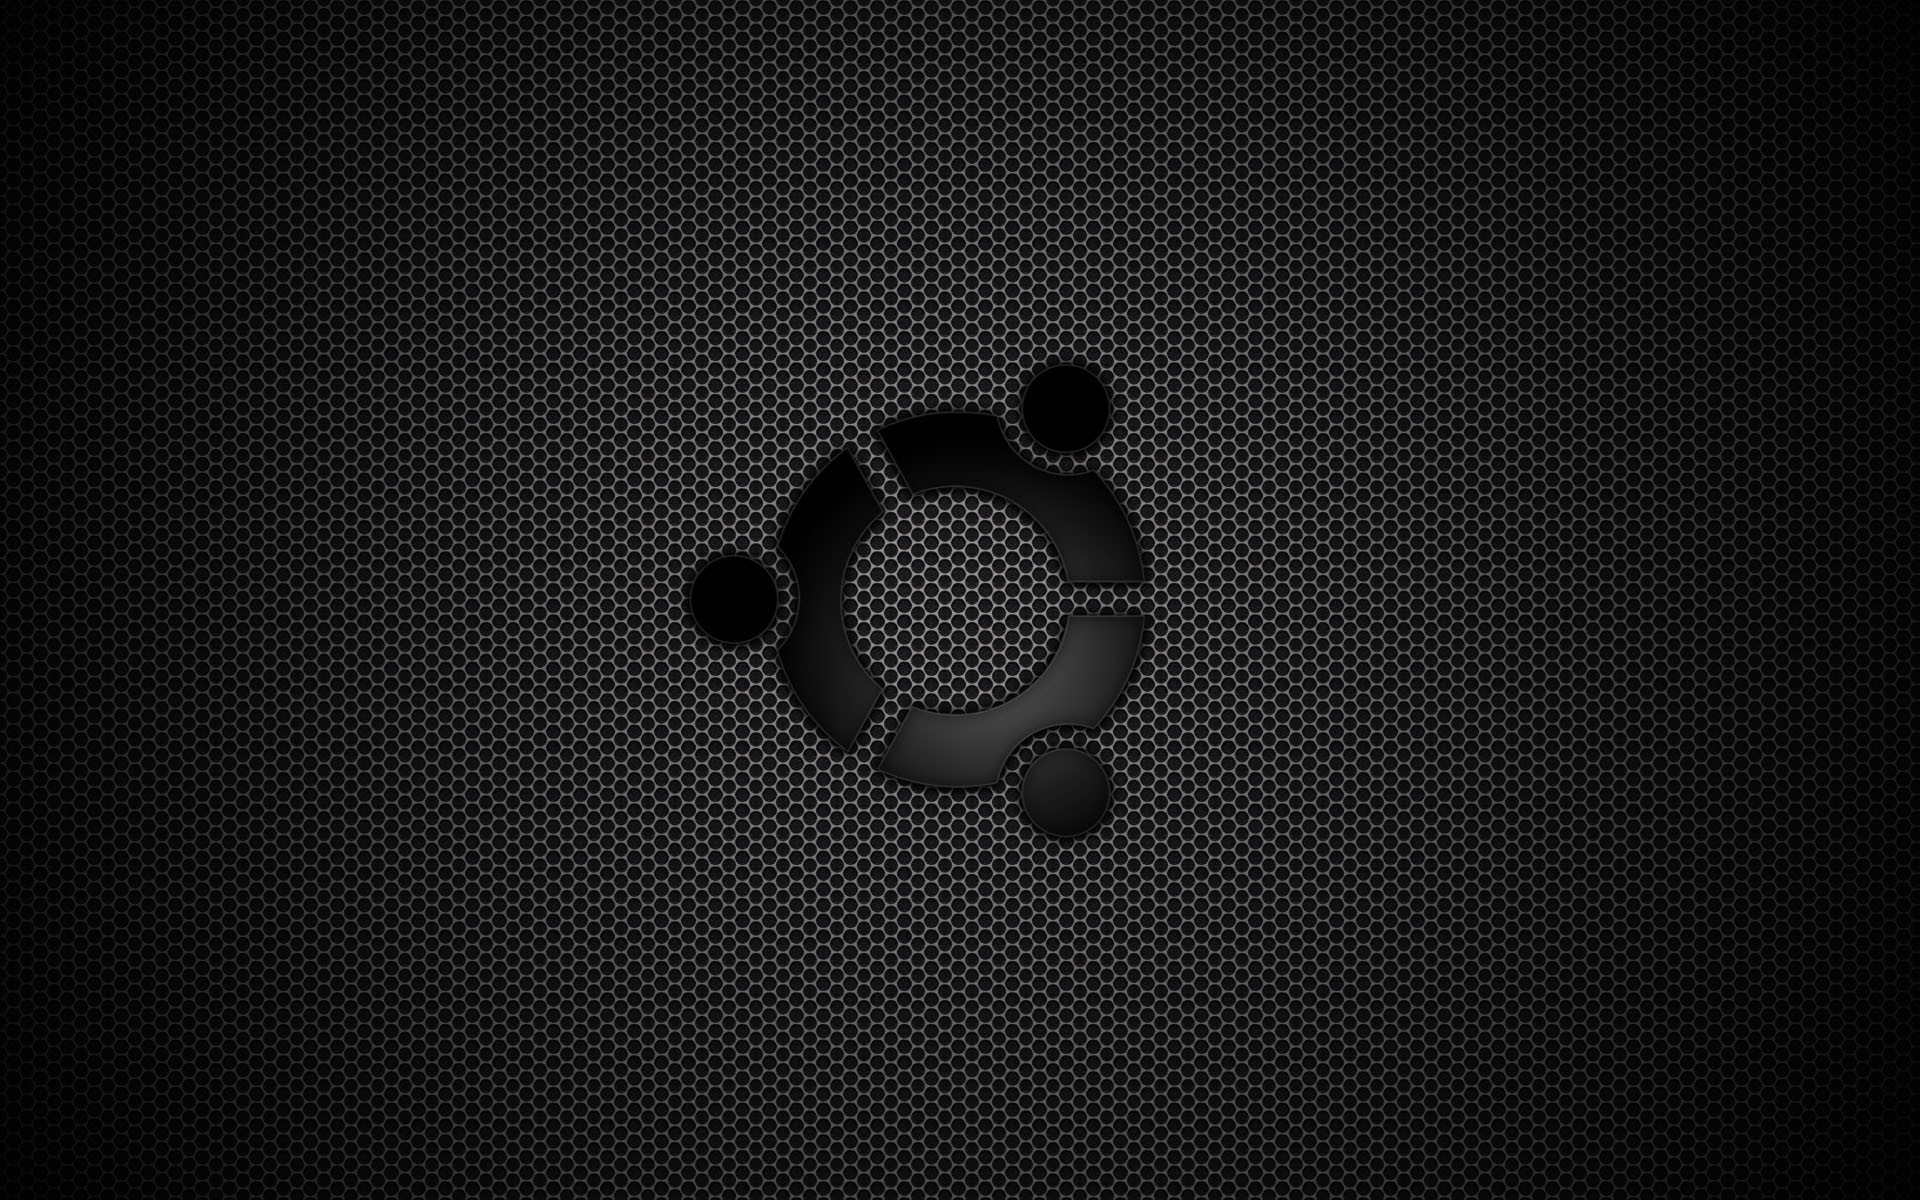 Awesome ubuntu hd wallpapers – Free HD Wallpapers Pinterest Hd wallpaper and Wallpaper